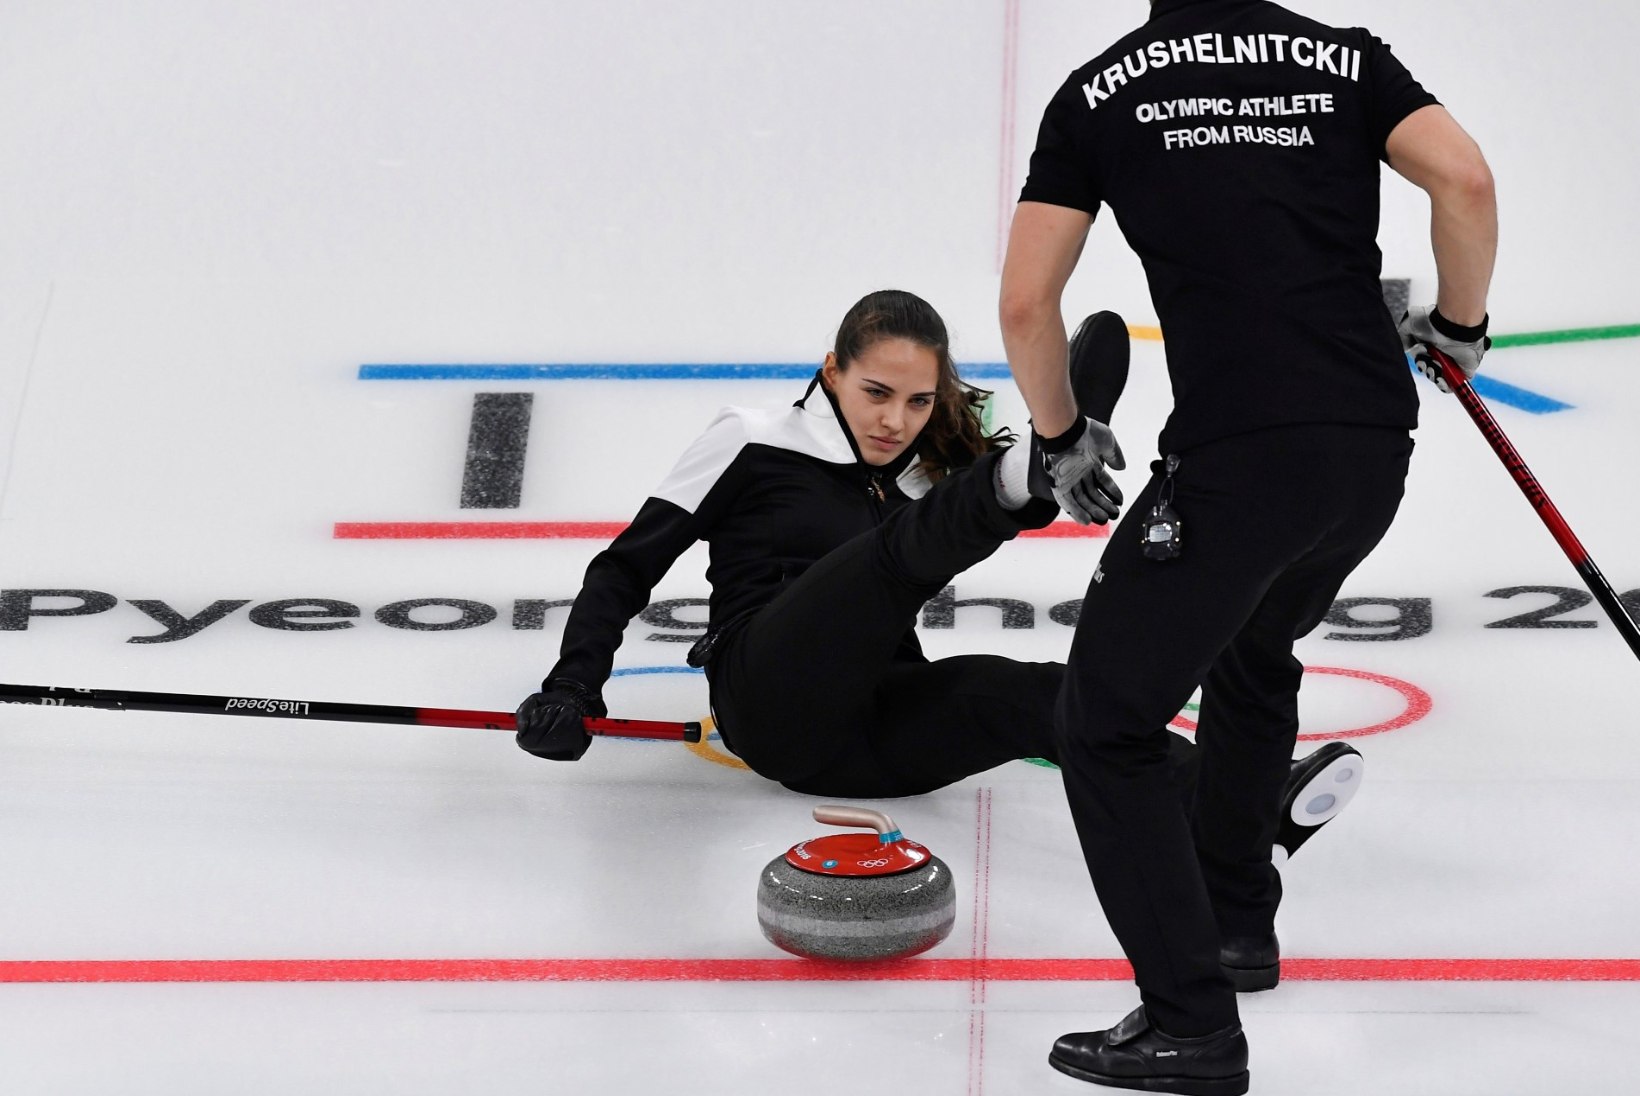 KUUMAD FOTOD | „Mina, ja Bondi-tüdruk?“ Venemaa curlingumängija modellilik välimus lööb olümpial laineid